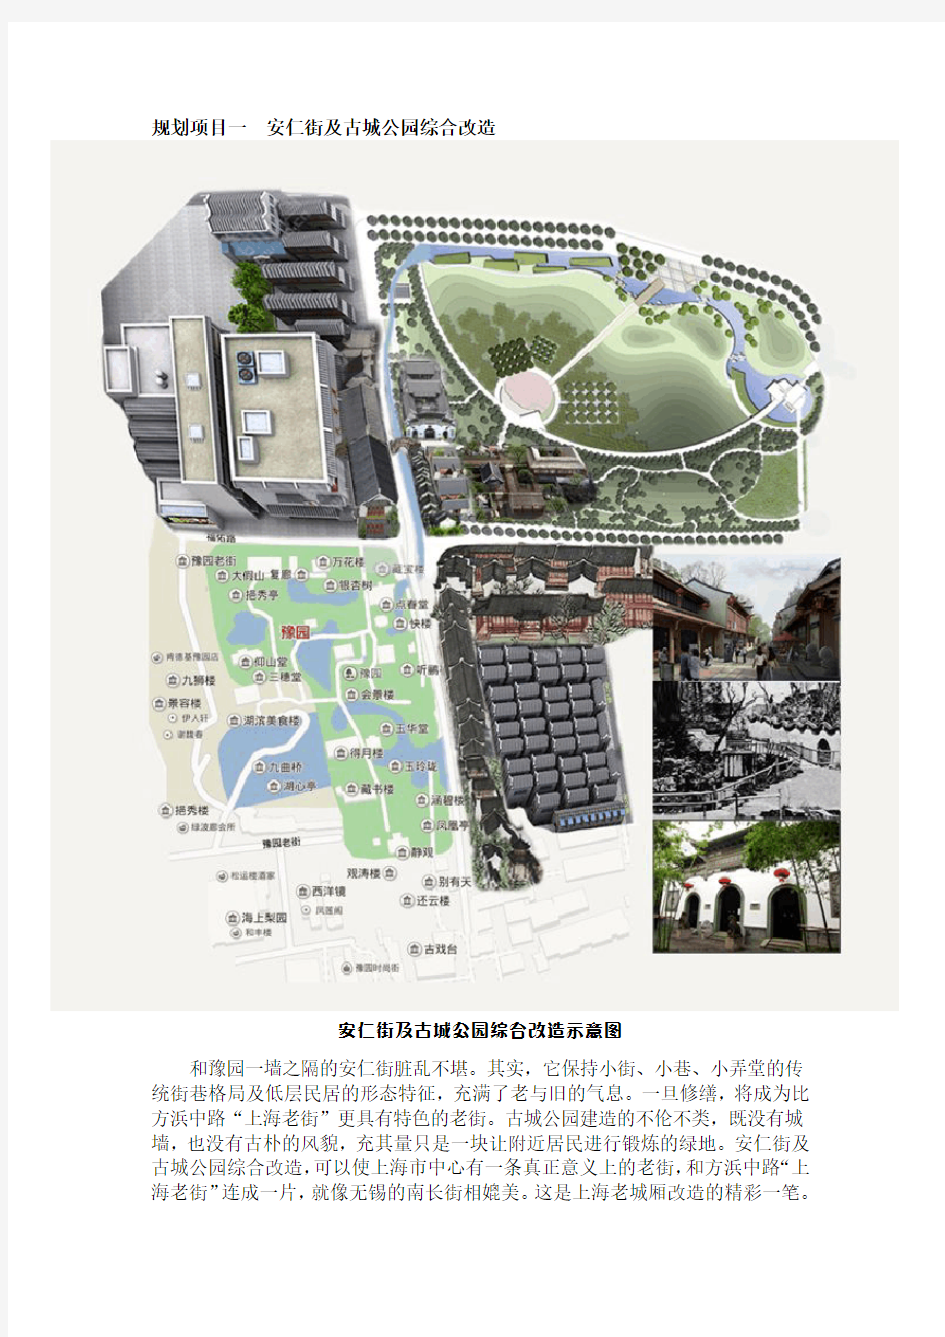 上海老城厢详细规划